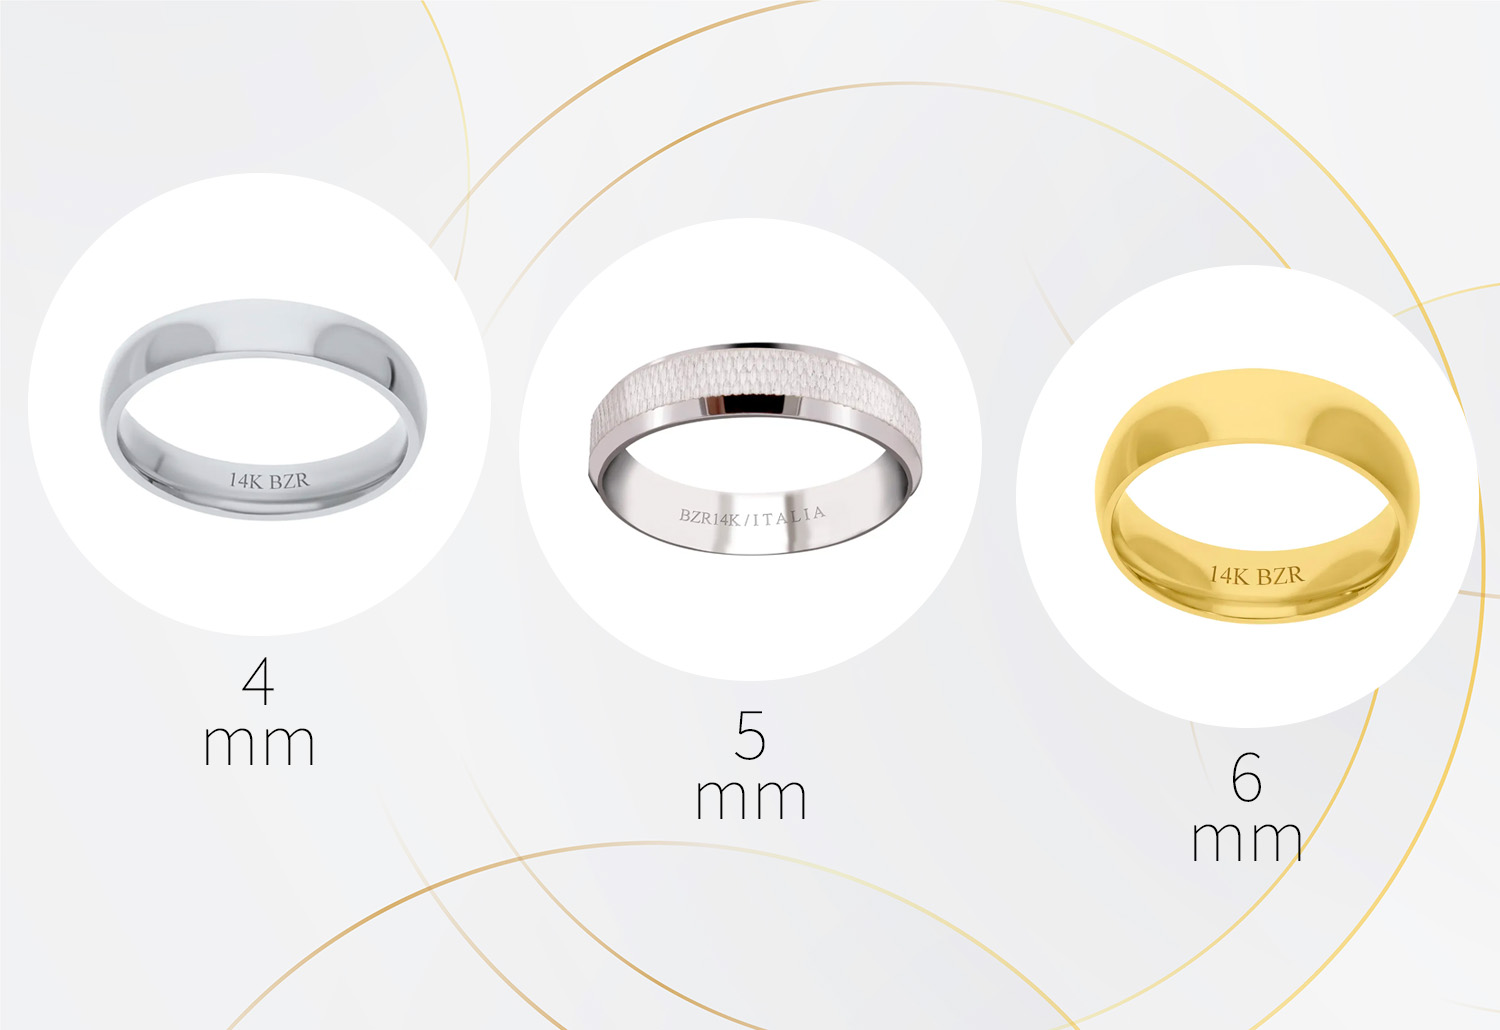 Cómo elegir la talla de los anillos?